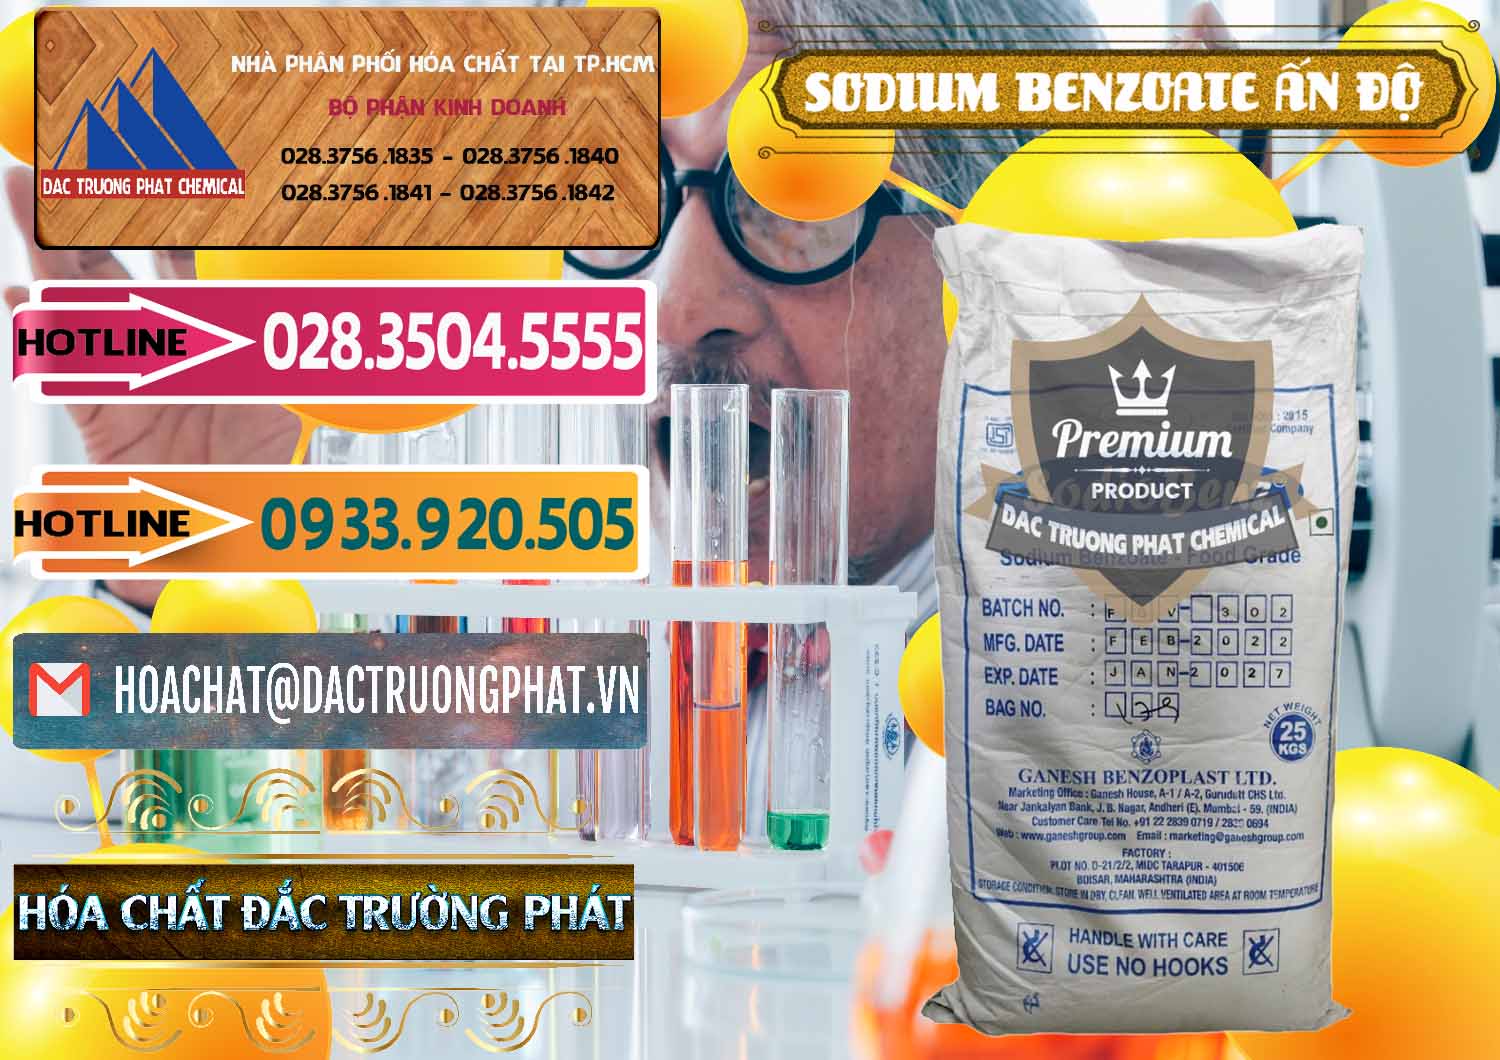 Phân phối _ bán Sodium Benzoate - Mốc Bột Ấn Độ India - 0361 - Nhà cung cấp _ nhập khẩu hóa chất tại TP.HCM - dactruongphat.vn